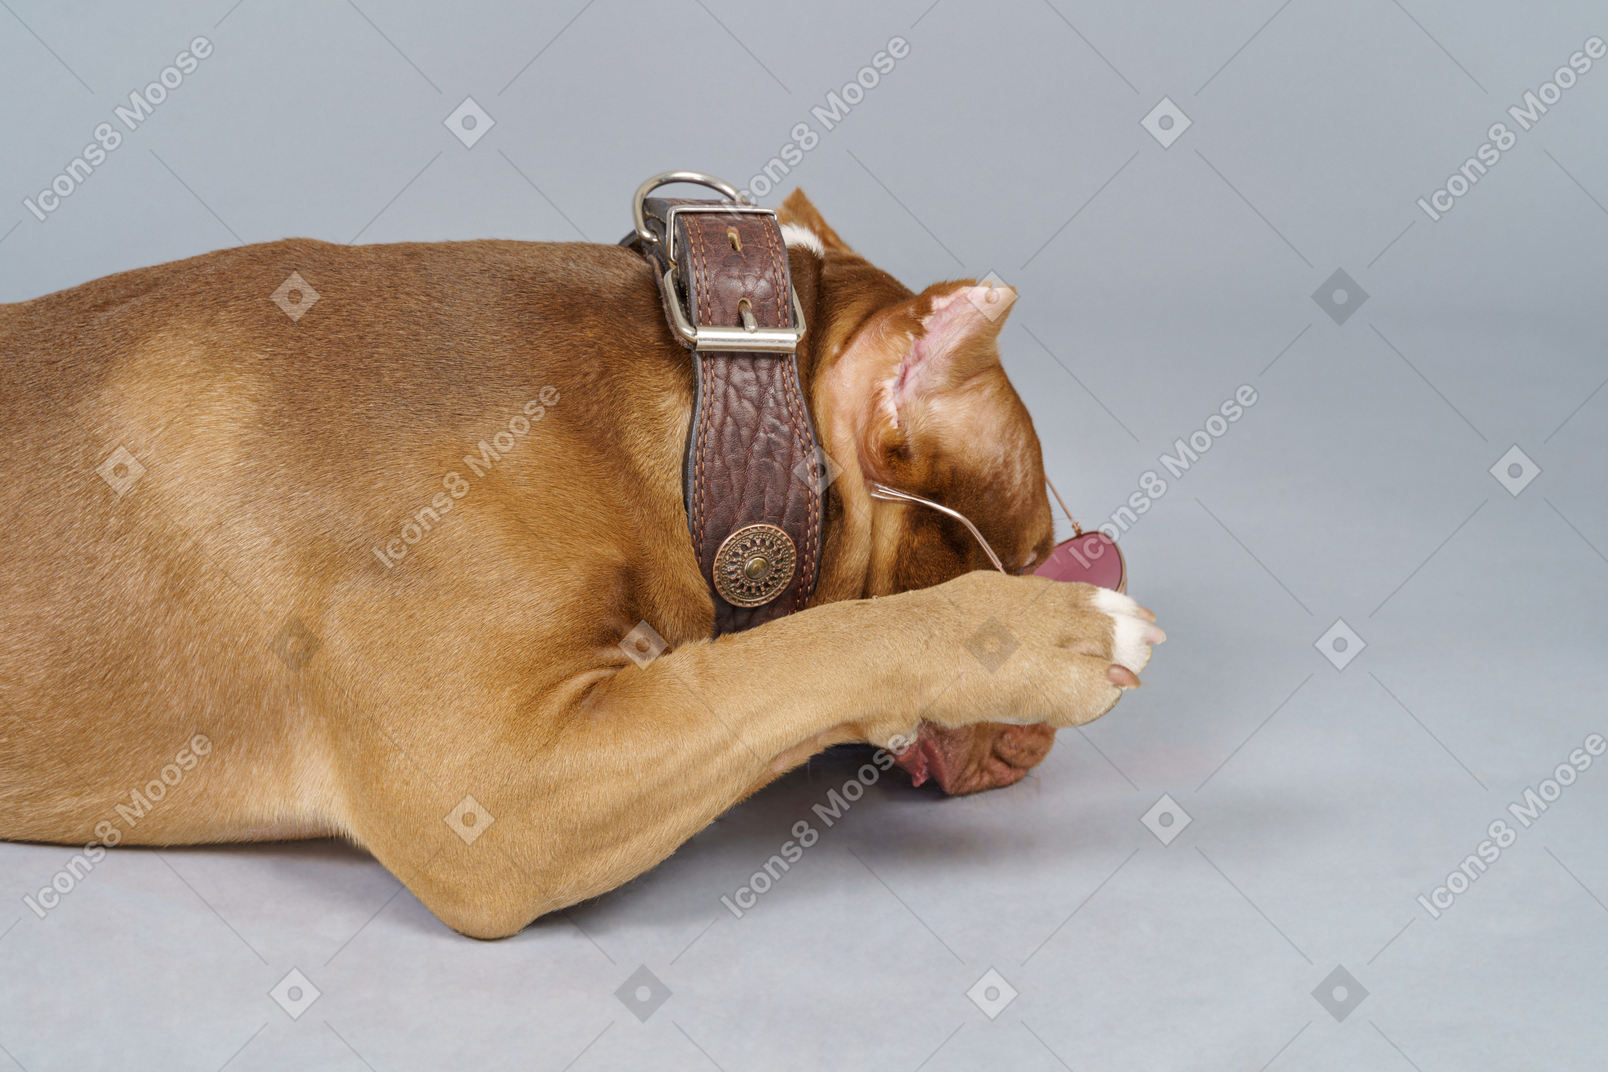 Vista lateral de un bulldog marrón vistiendo collar de perro y ocultando el hocico